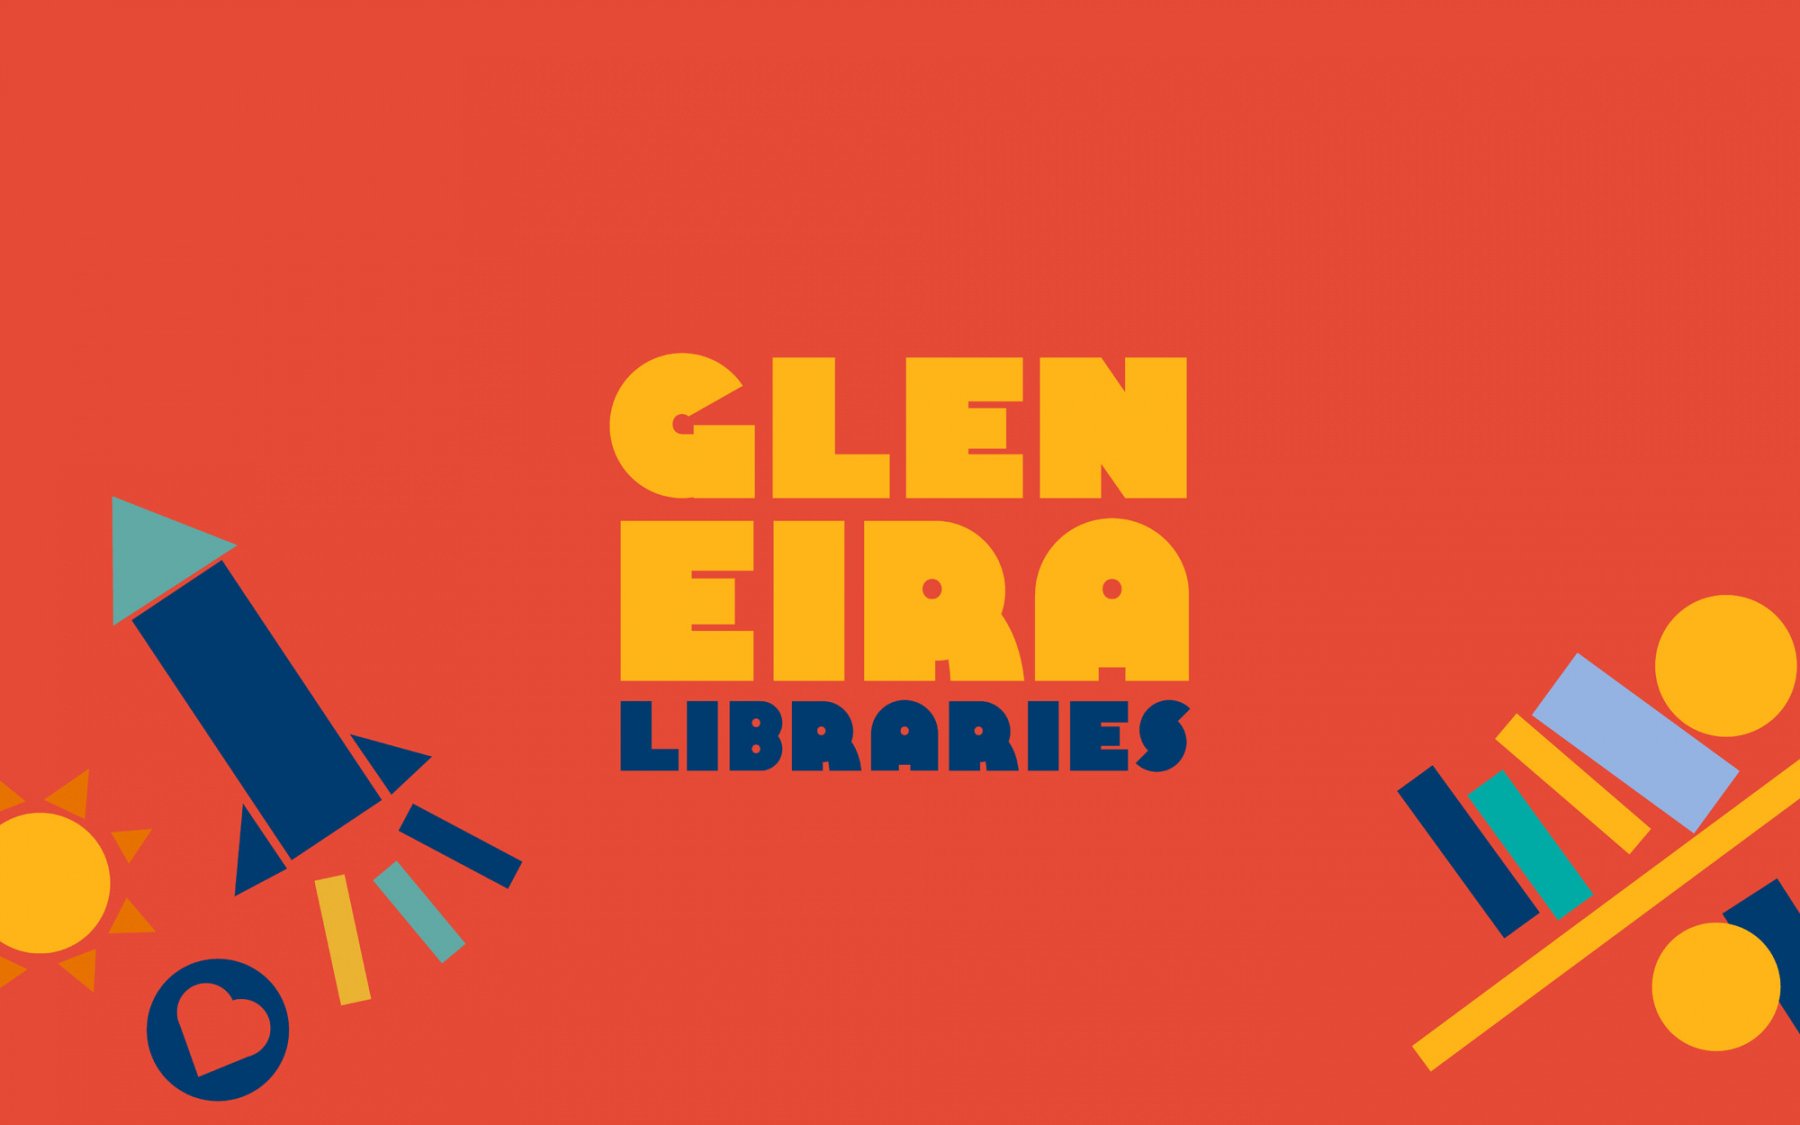 Close up image of Glen Eira Libraries logo